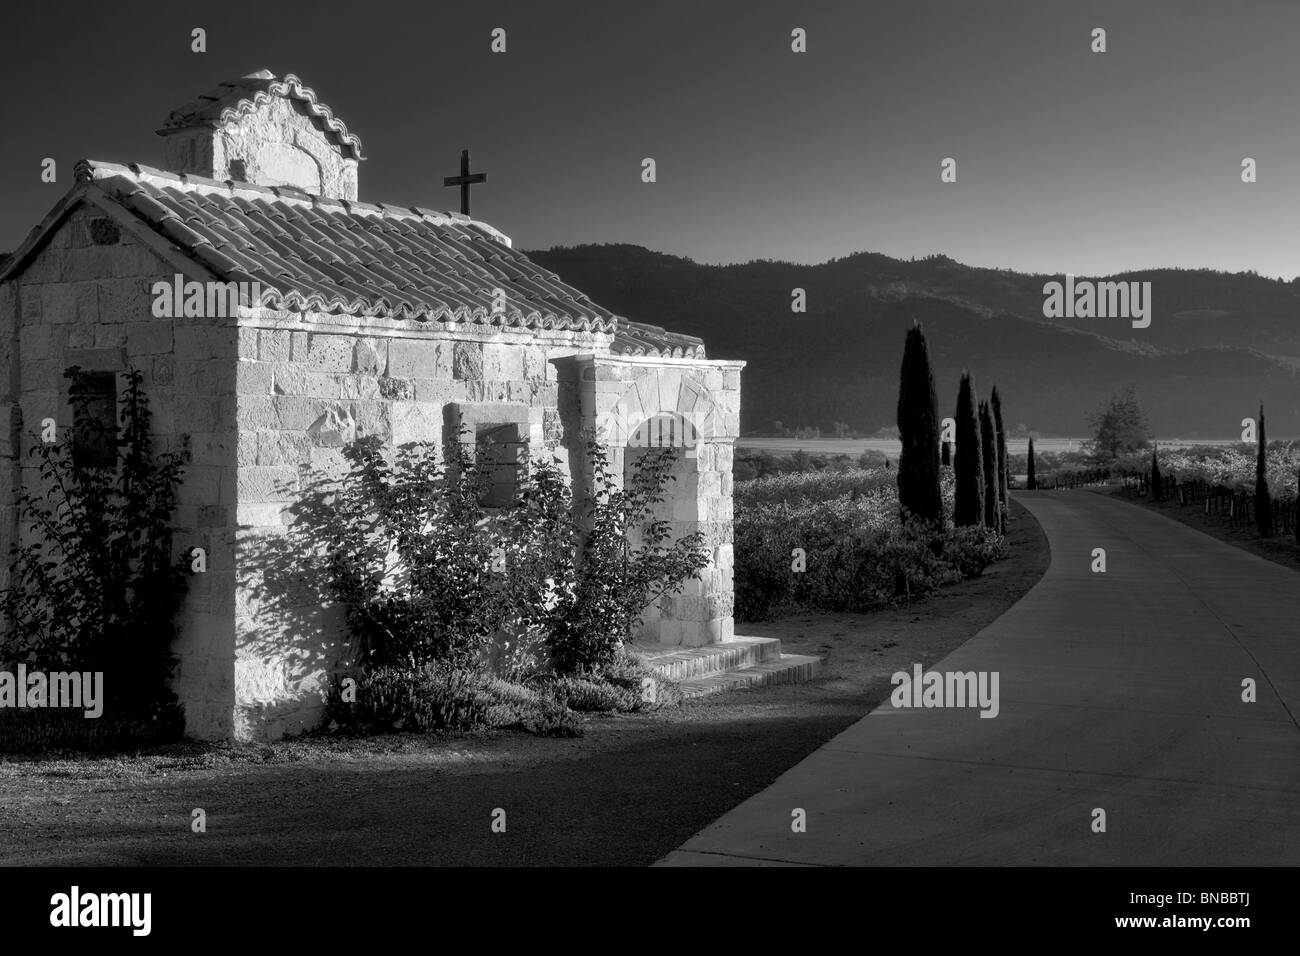 Petite chapelle avec des roses à l'entrée de Castello di Amorosa. Napa Valley, Californie. Bien distribués Banque D'Images